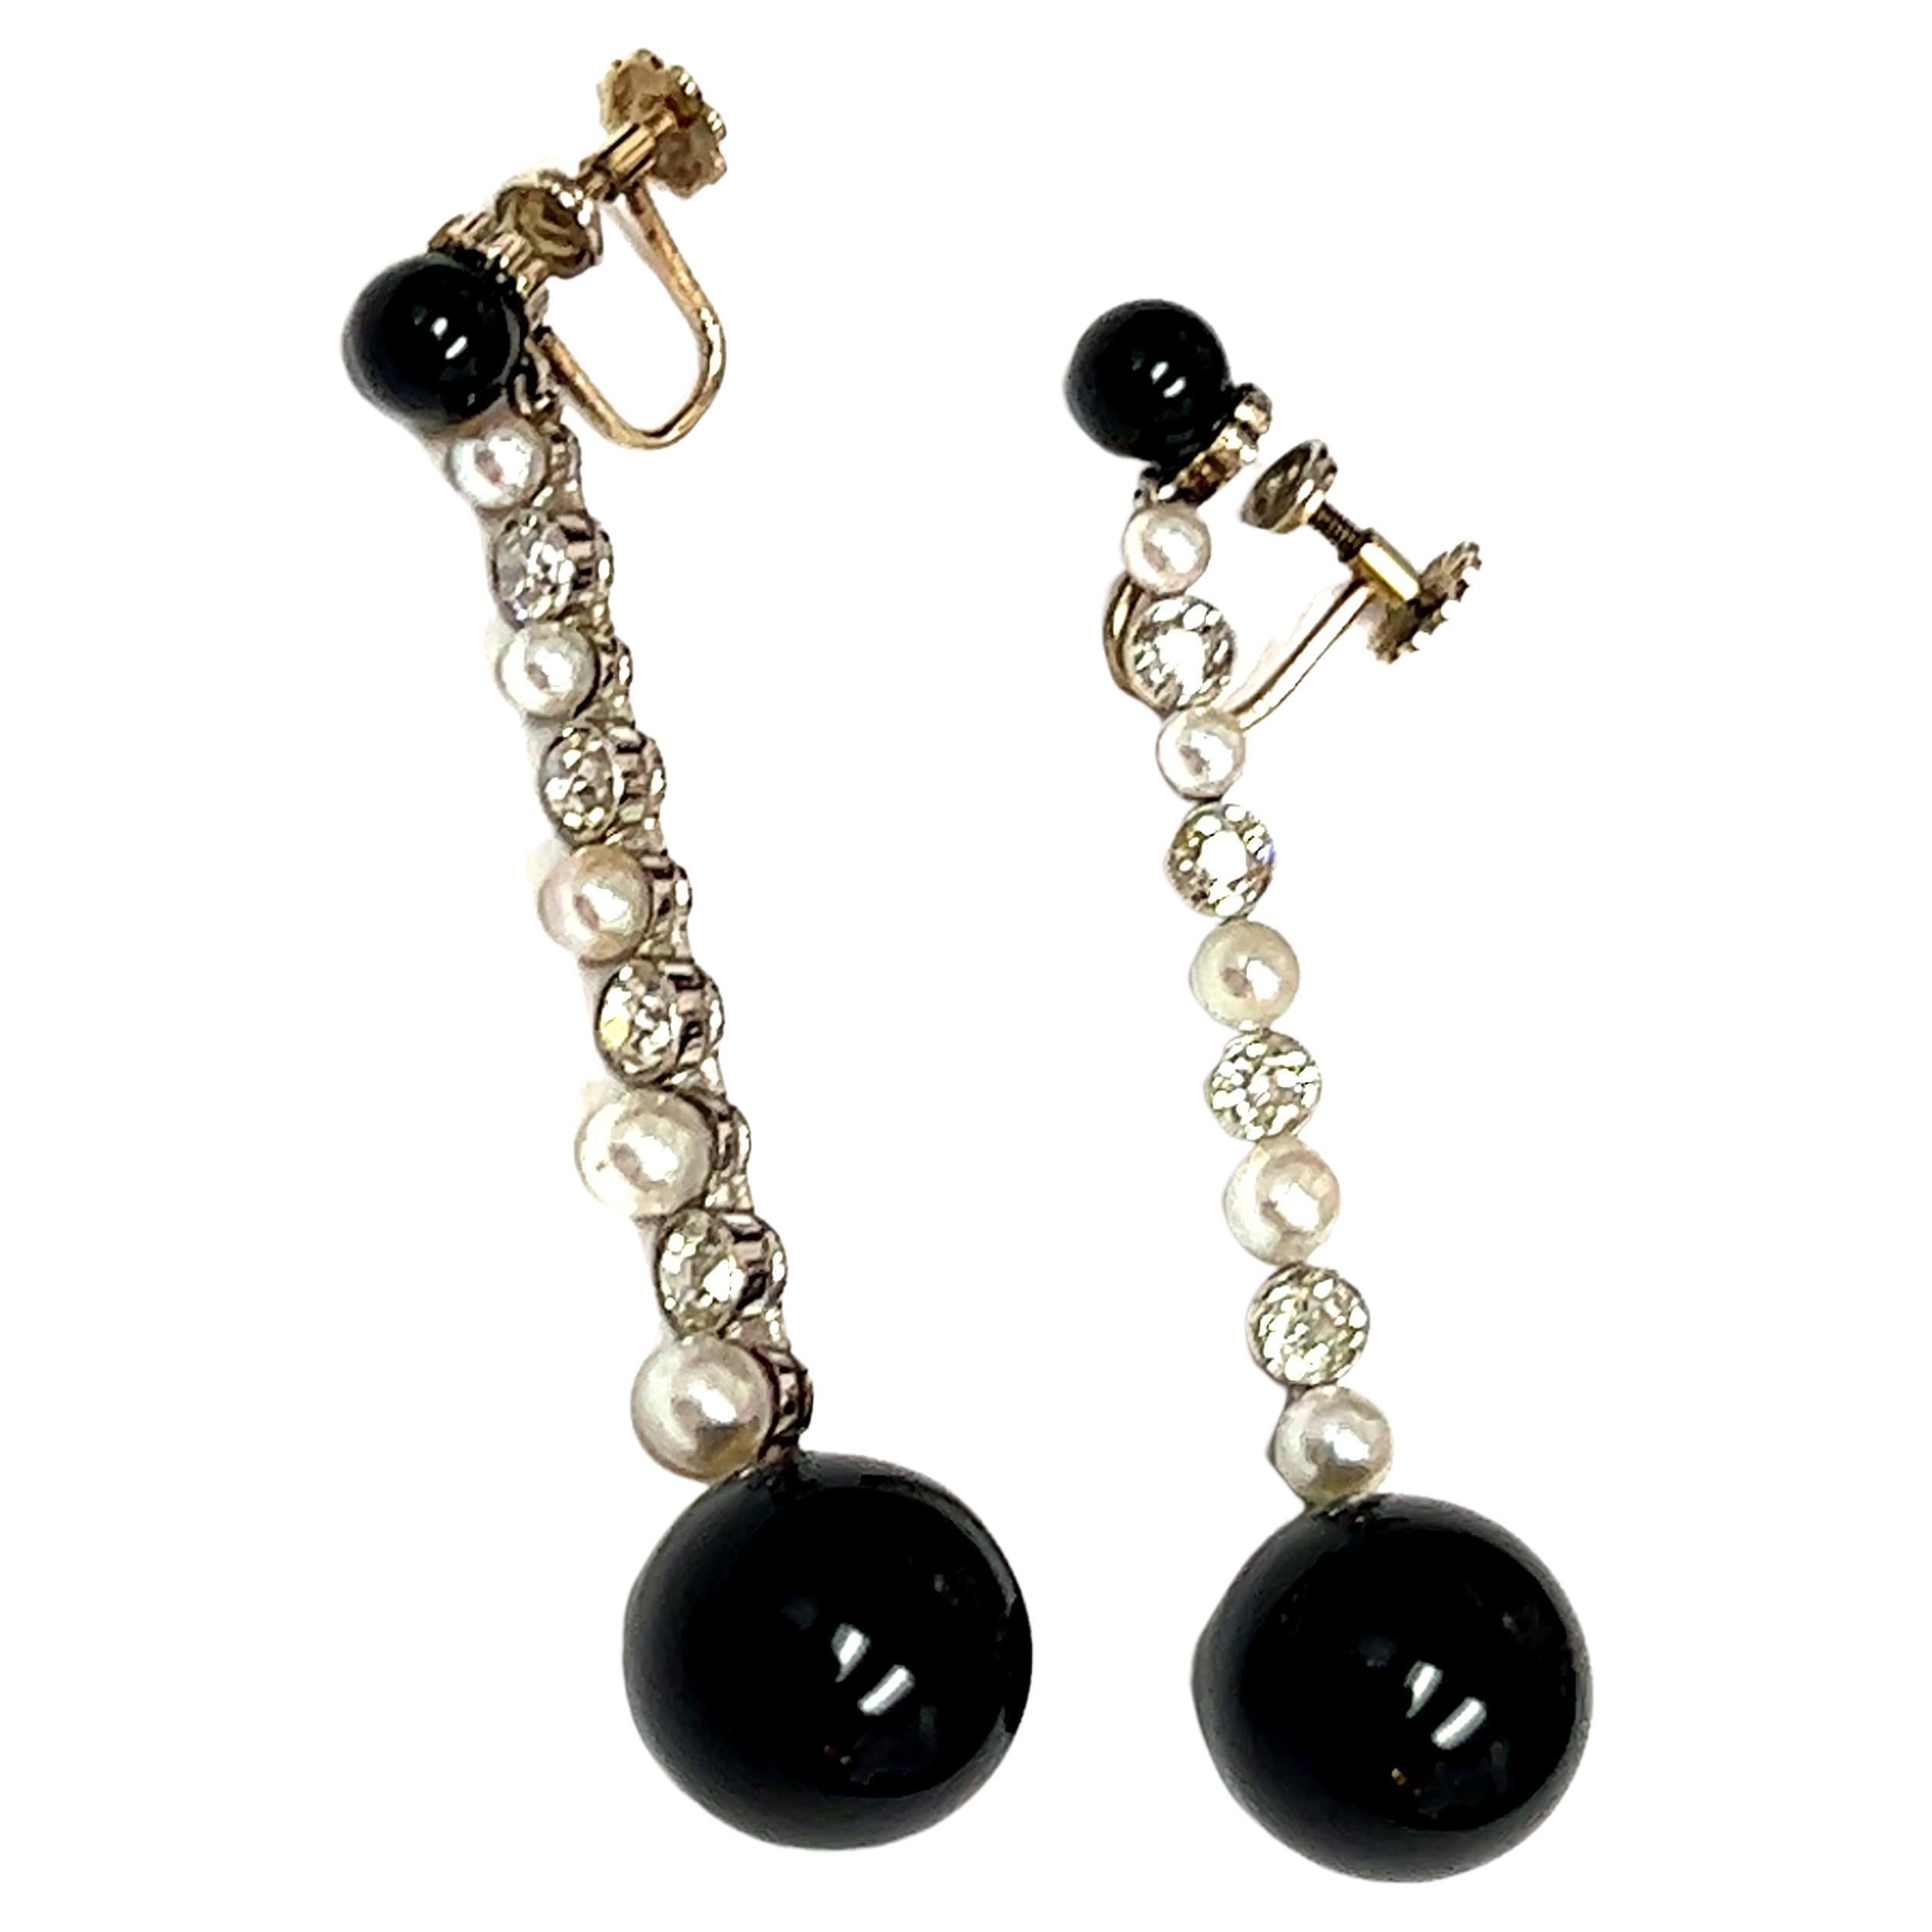 Ein atemberaubendes Paar Art-Déco-Ohrringe aus Platin mit Onyx, Perlen und Diamanten, eine wahre Verkörperung der zeitlosen Eleganz und geometrischen Präzision, die für die Art-Déco-Ära charakteristisch sind. Die Ohrringe bestehen aus runden